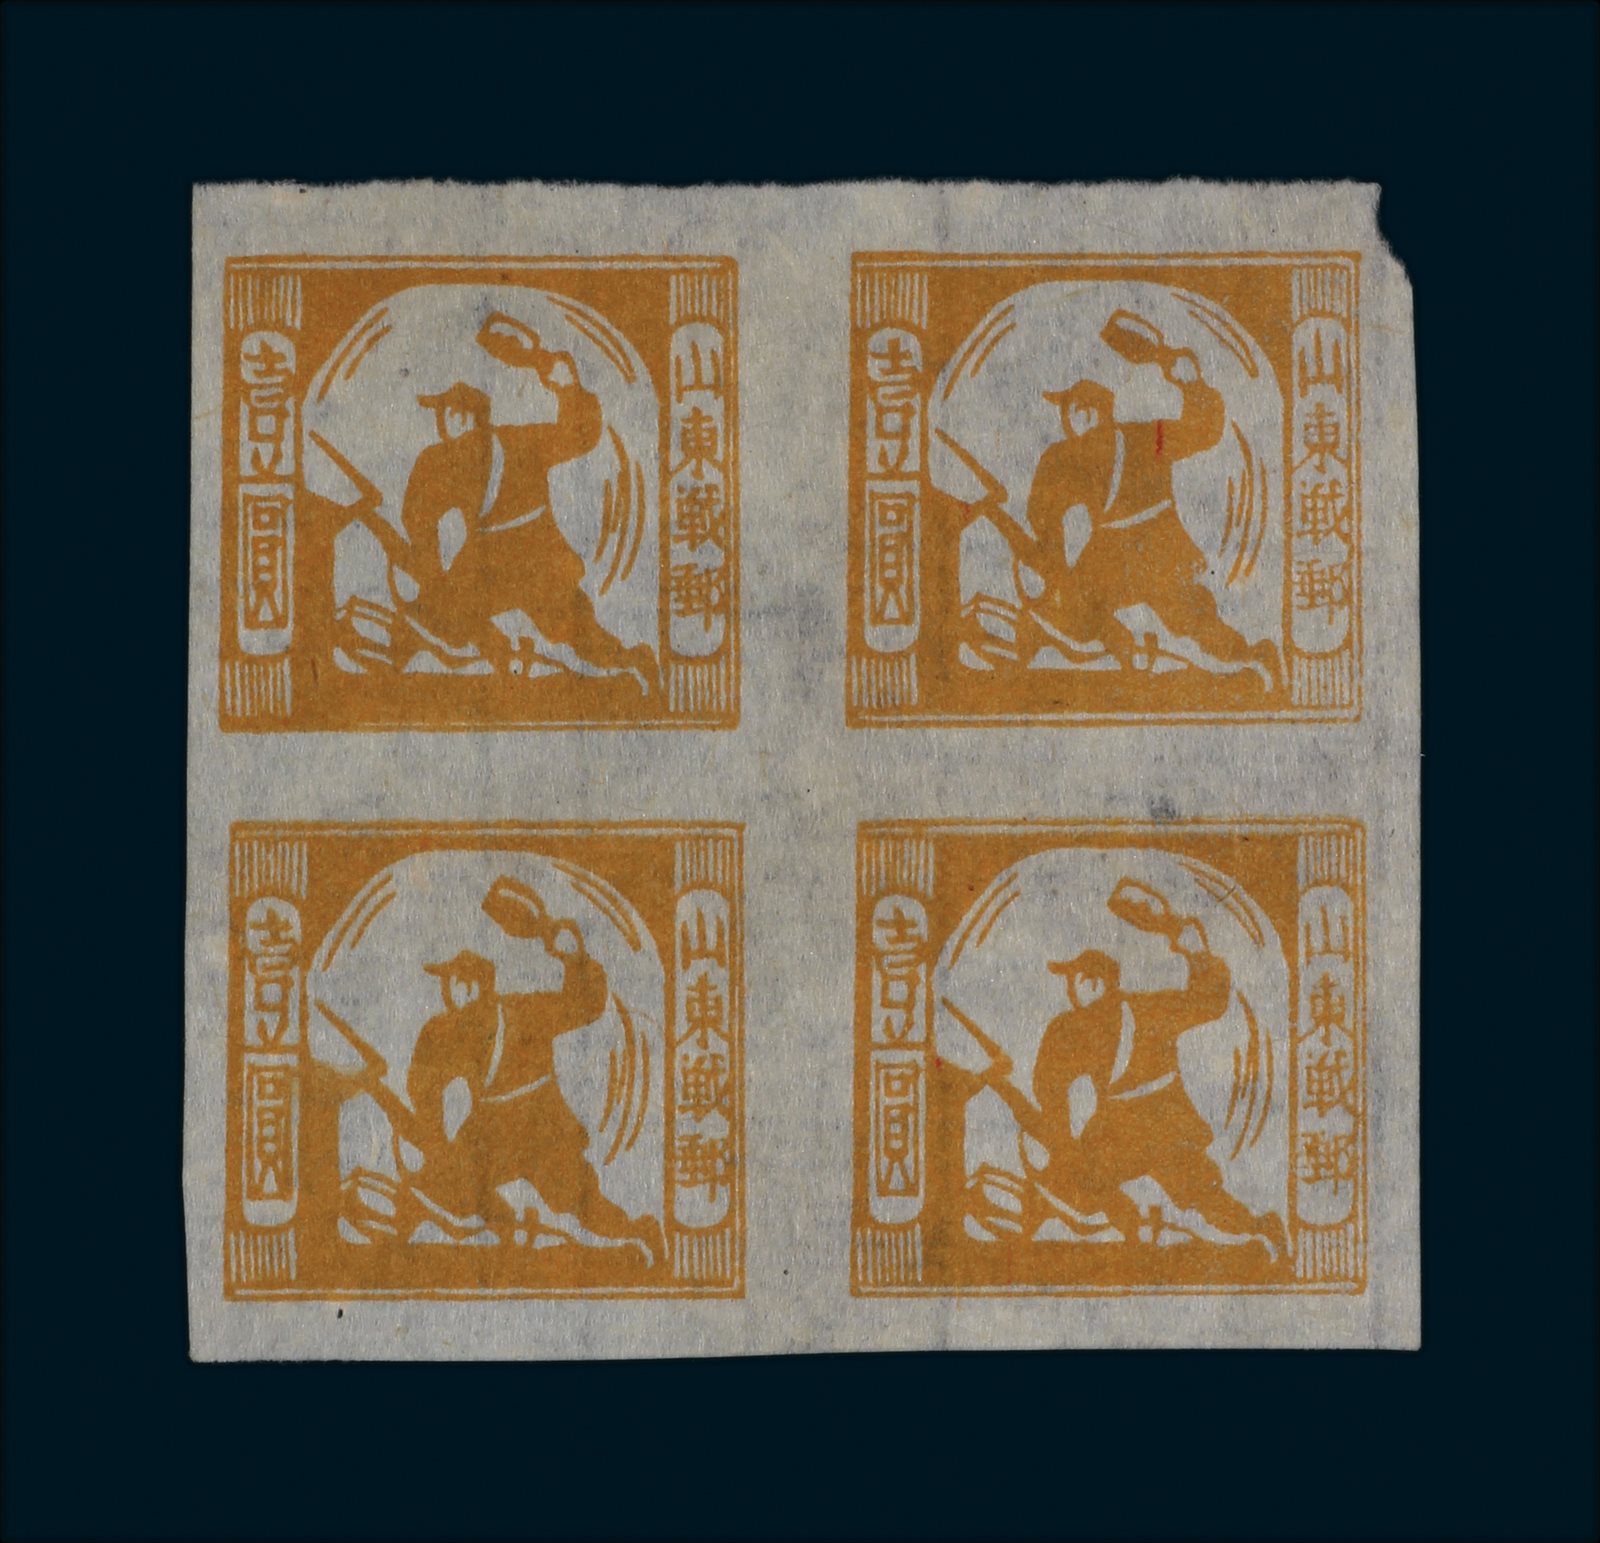 1944年山东战时邮务总局发行掷弹图邮票桔黄色1元四方联一件